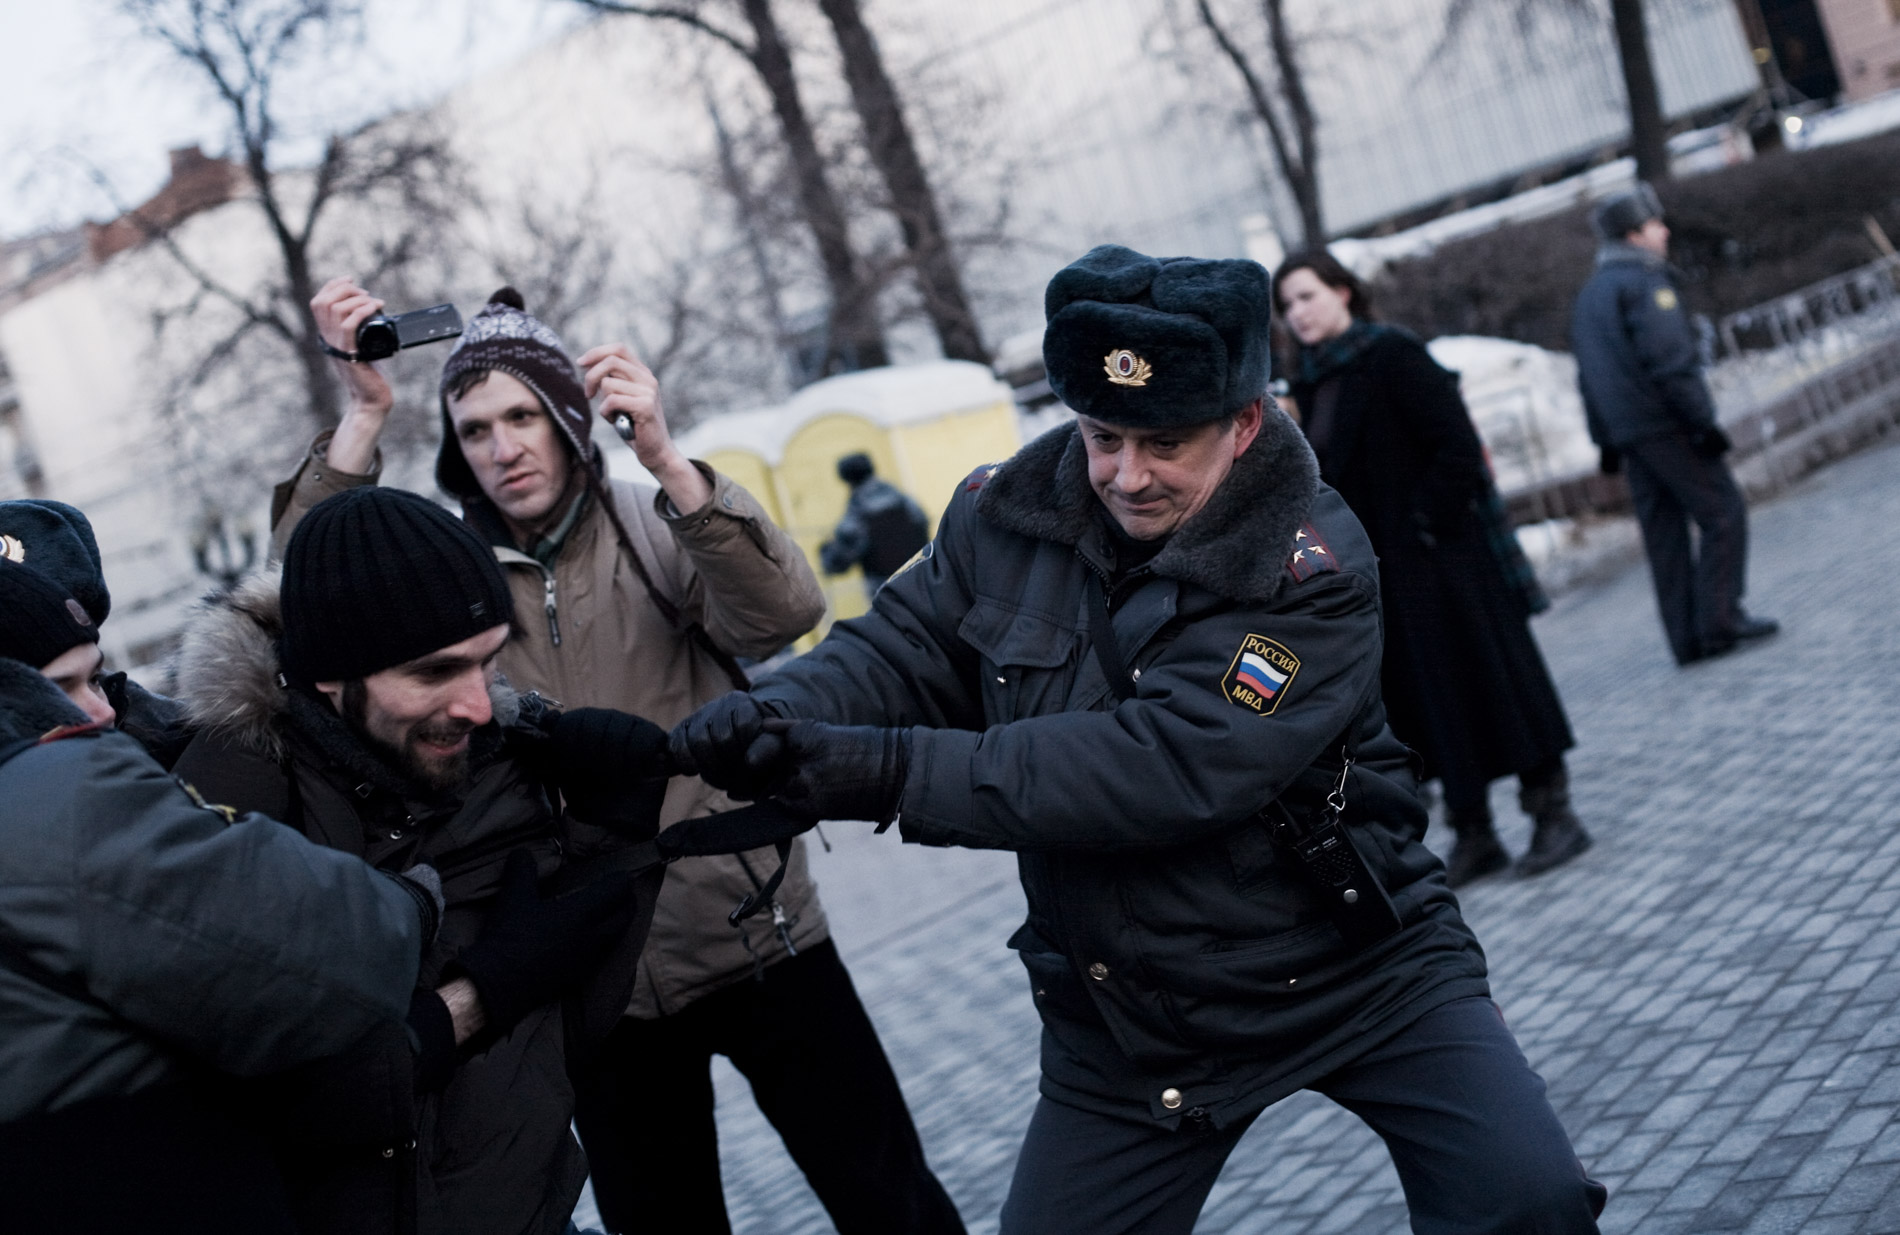 Une dizaine de manifestants opposes a Poutine ont essaye de se reunir place Pouchkinskaya, malgre les dizaines de policiers. le 6 mars 2012 a Moscou